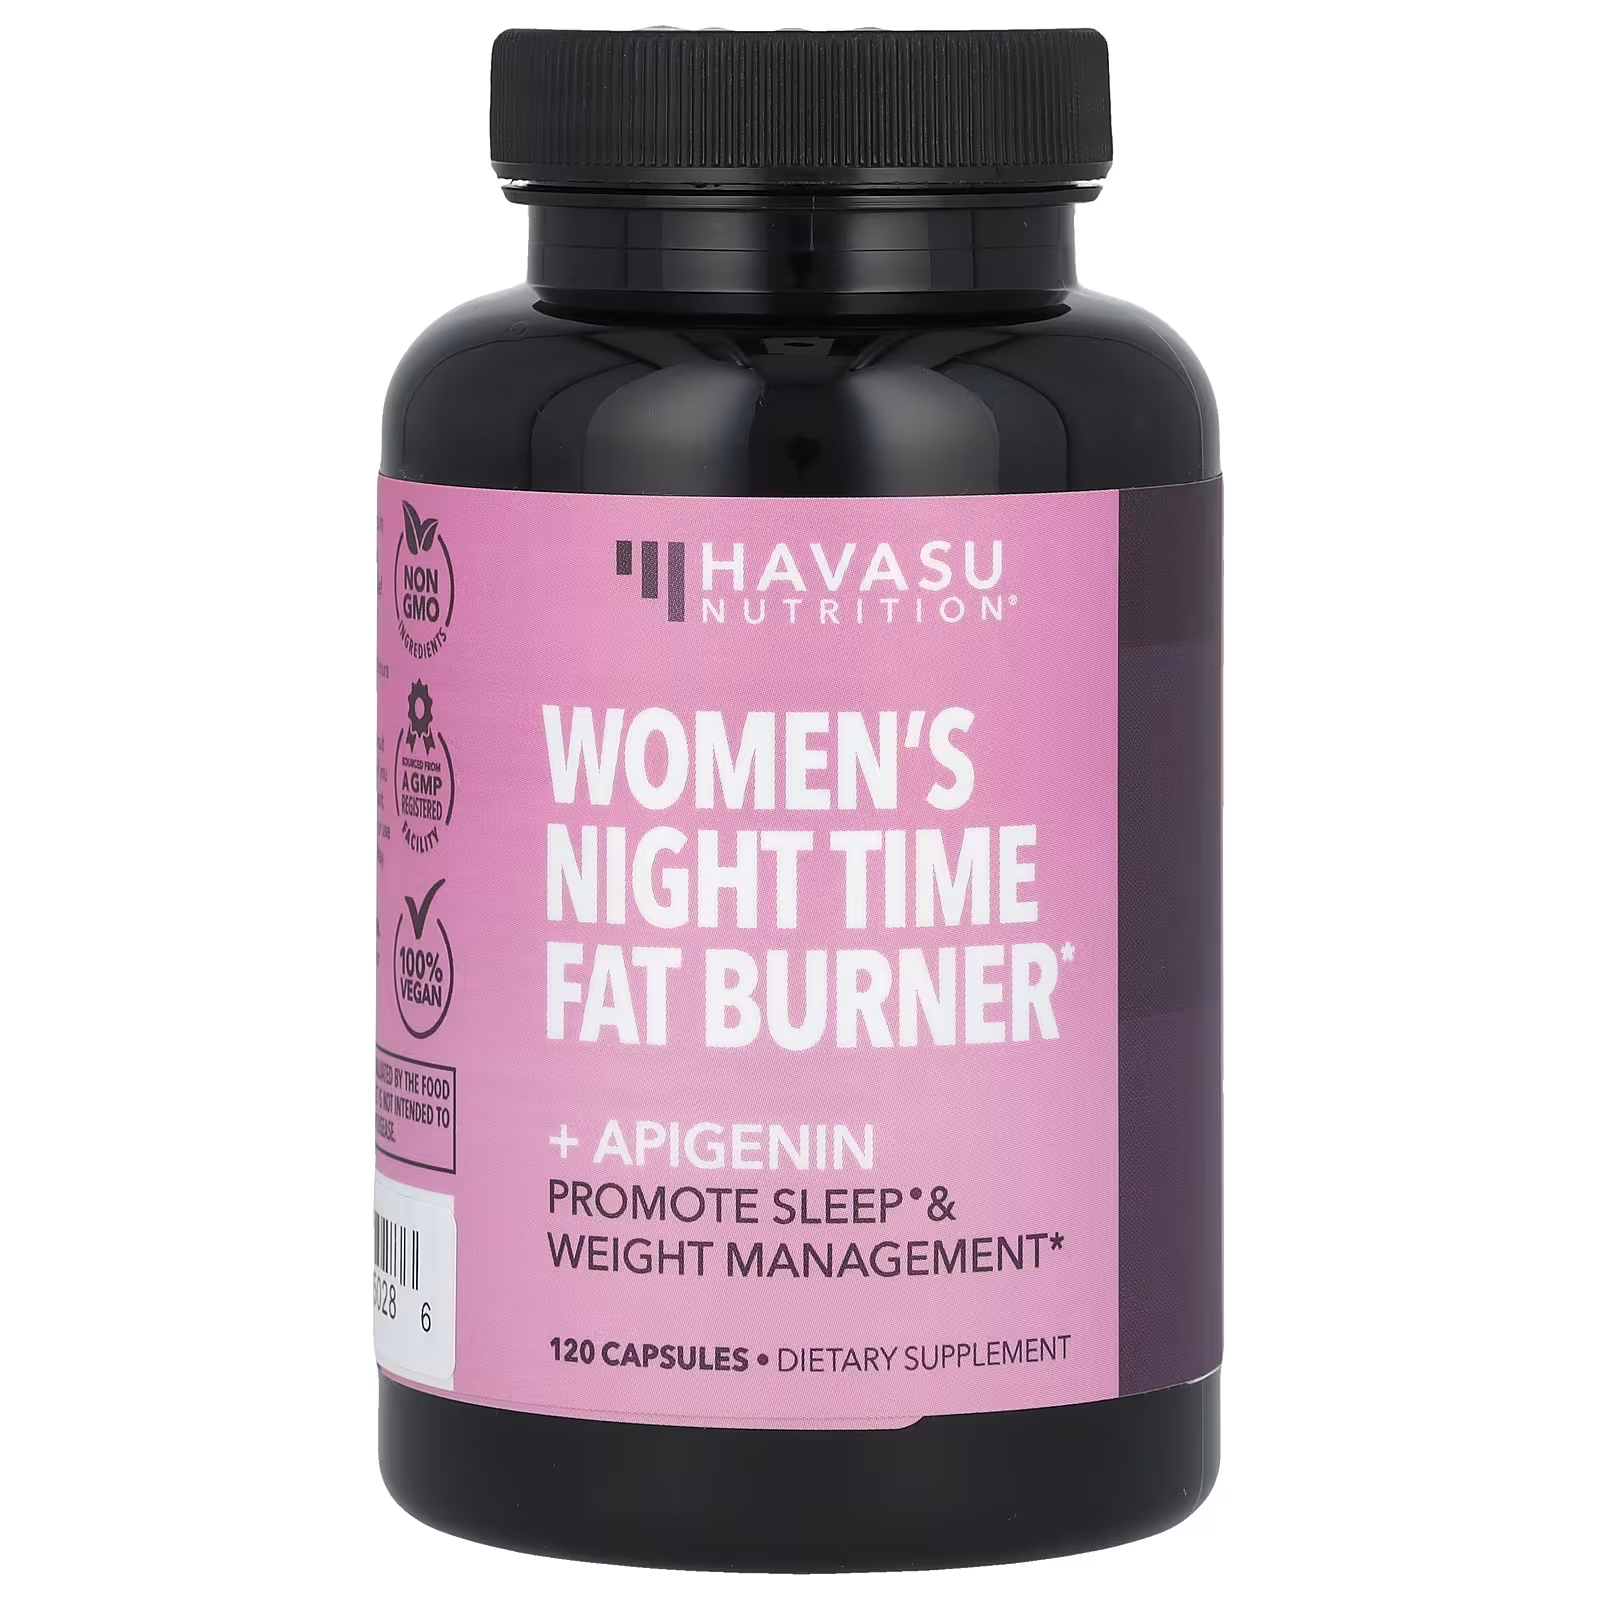 Havasu Nutrition Женский ночной сжигатель жира + апигенин, 120 капсул